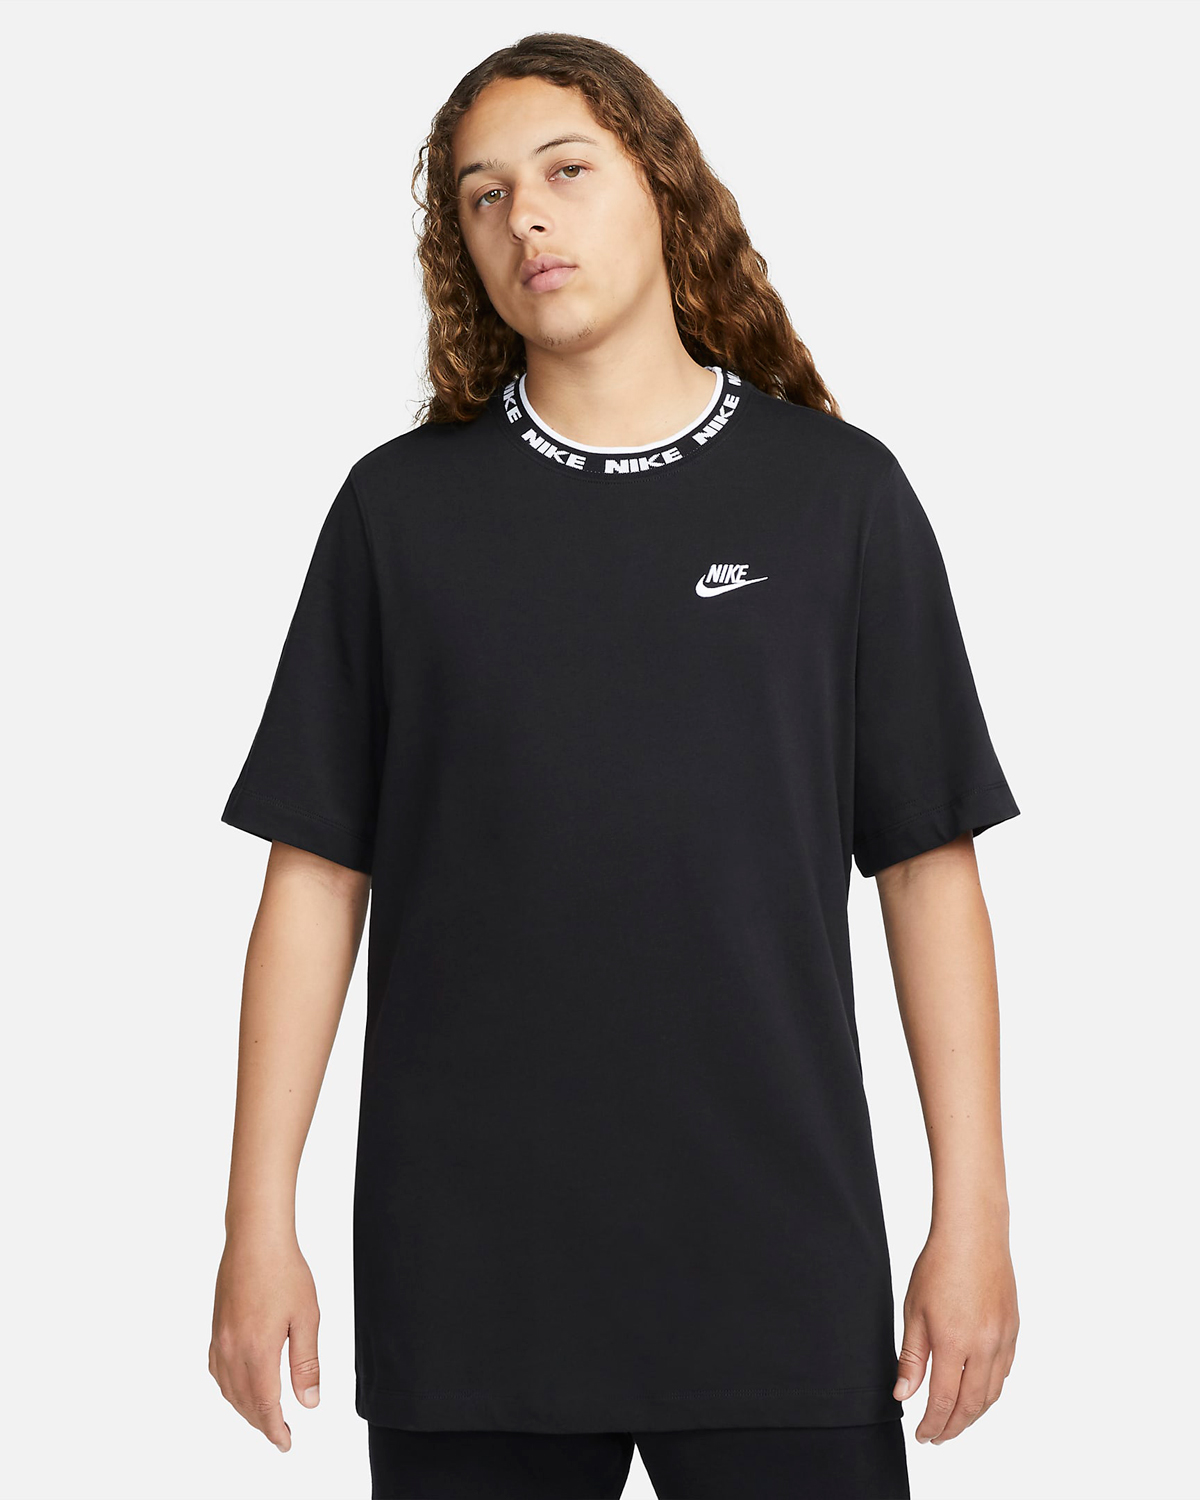 Nike-Club-T-Shirt-Black-White